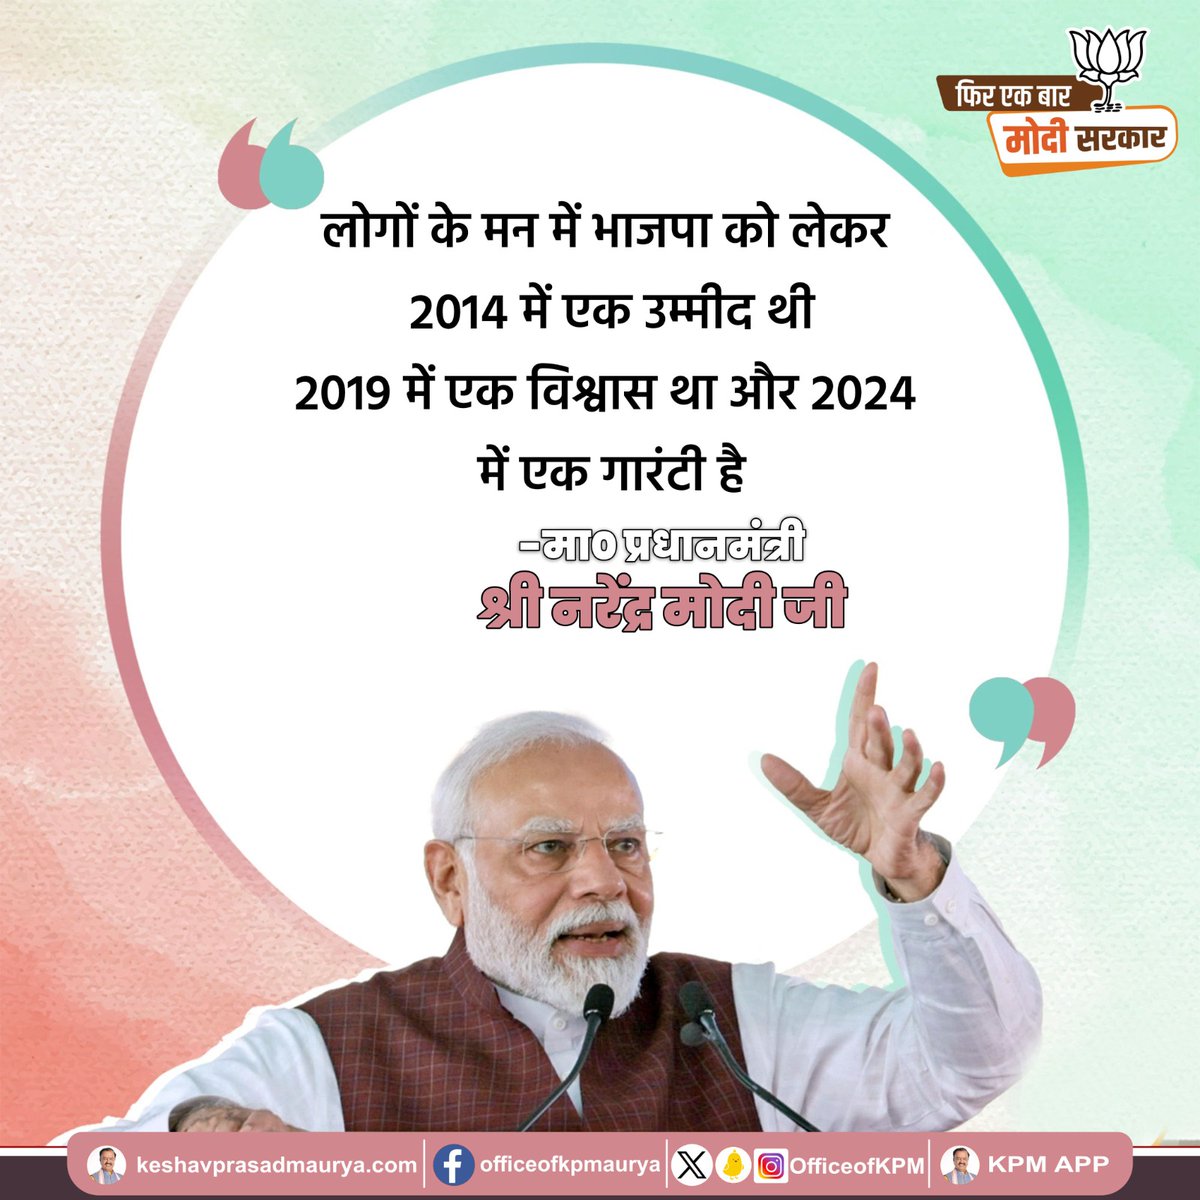 लोगों के मन में भाजपा को लेकर 2014 में एक उम्मीद थी 2019 में एक विश्वास था और 2024 में एक गारंटी है। -मा0 प्रधानमंत्री श्री @narendramodi जी @BJP4India @kpmaurya1 #AbkiBaar400Paar #LokSabhaElection2024